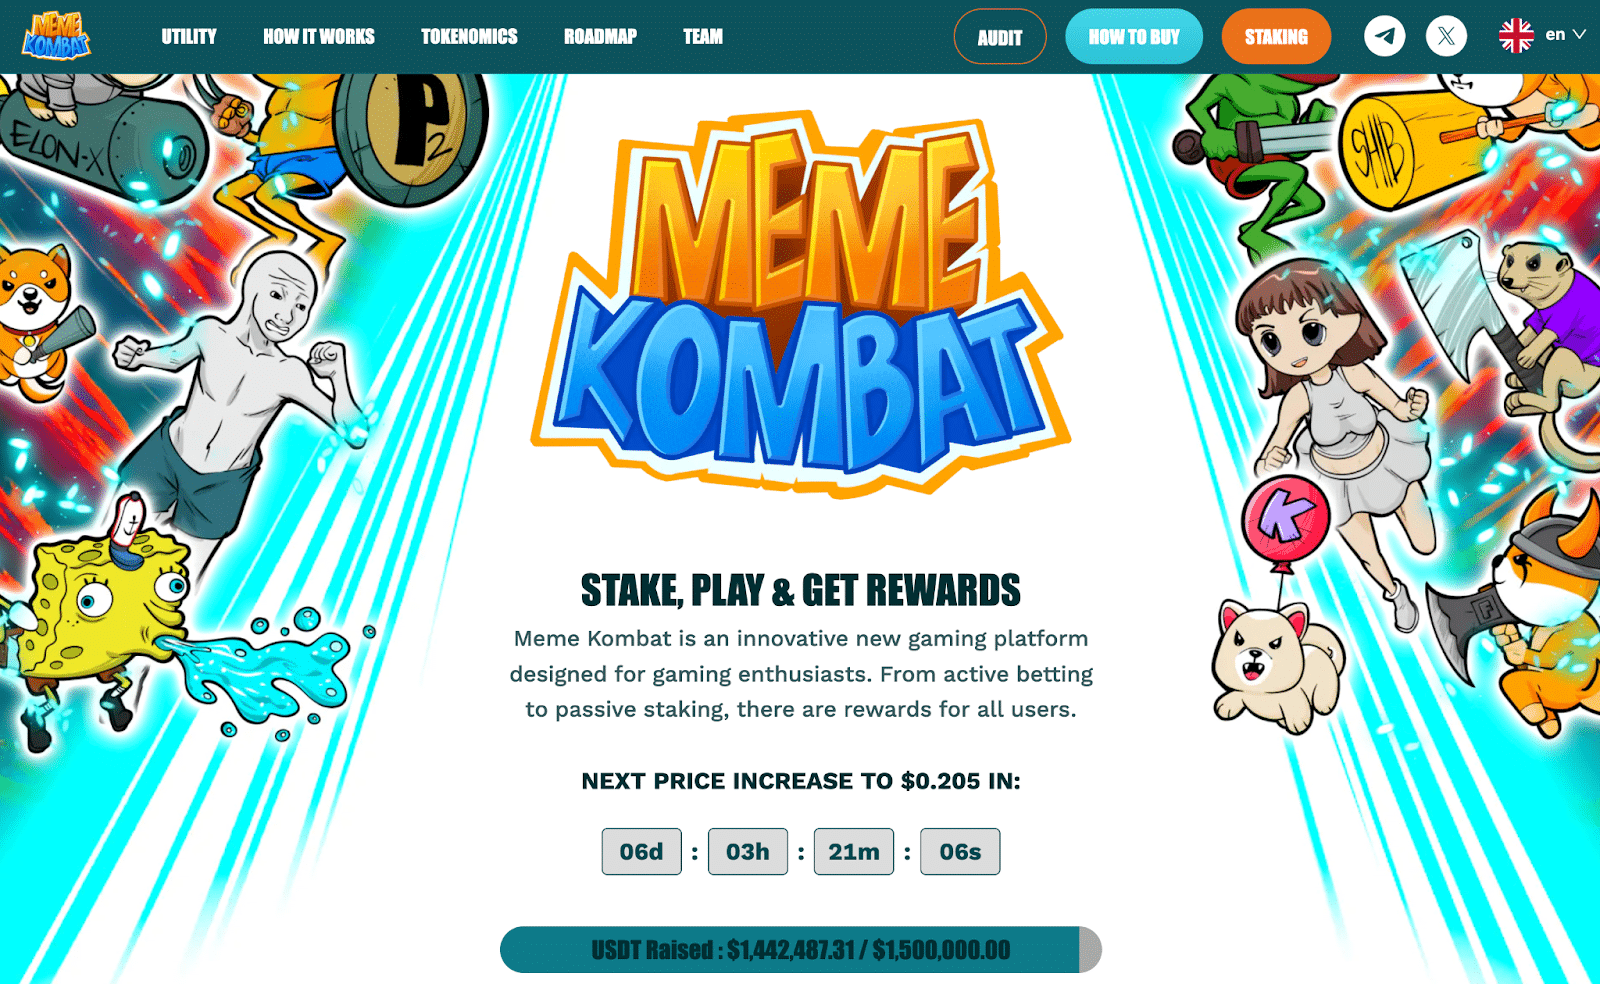 黄金甲体育官网Pepe币价格上涨25%　Meme Kombat为独特游戏平台筹集近150万美元　或将迎来100倍增长